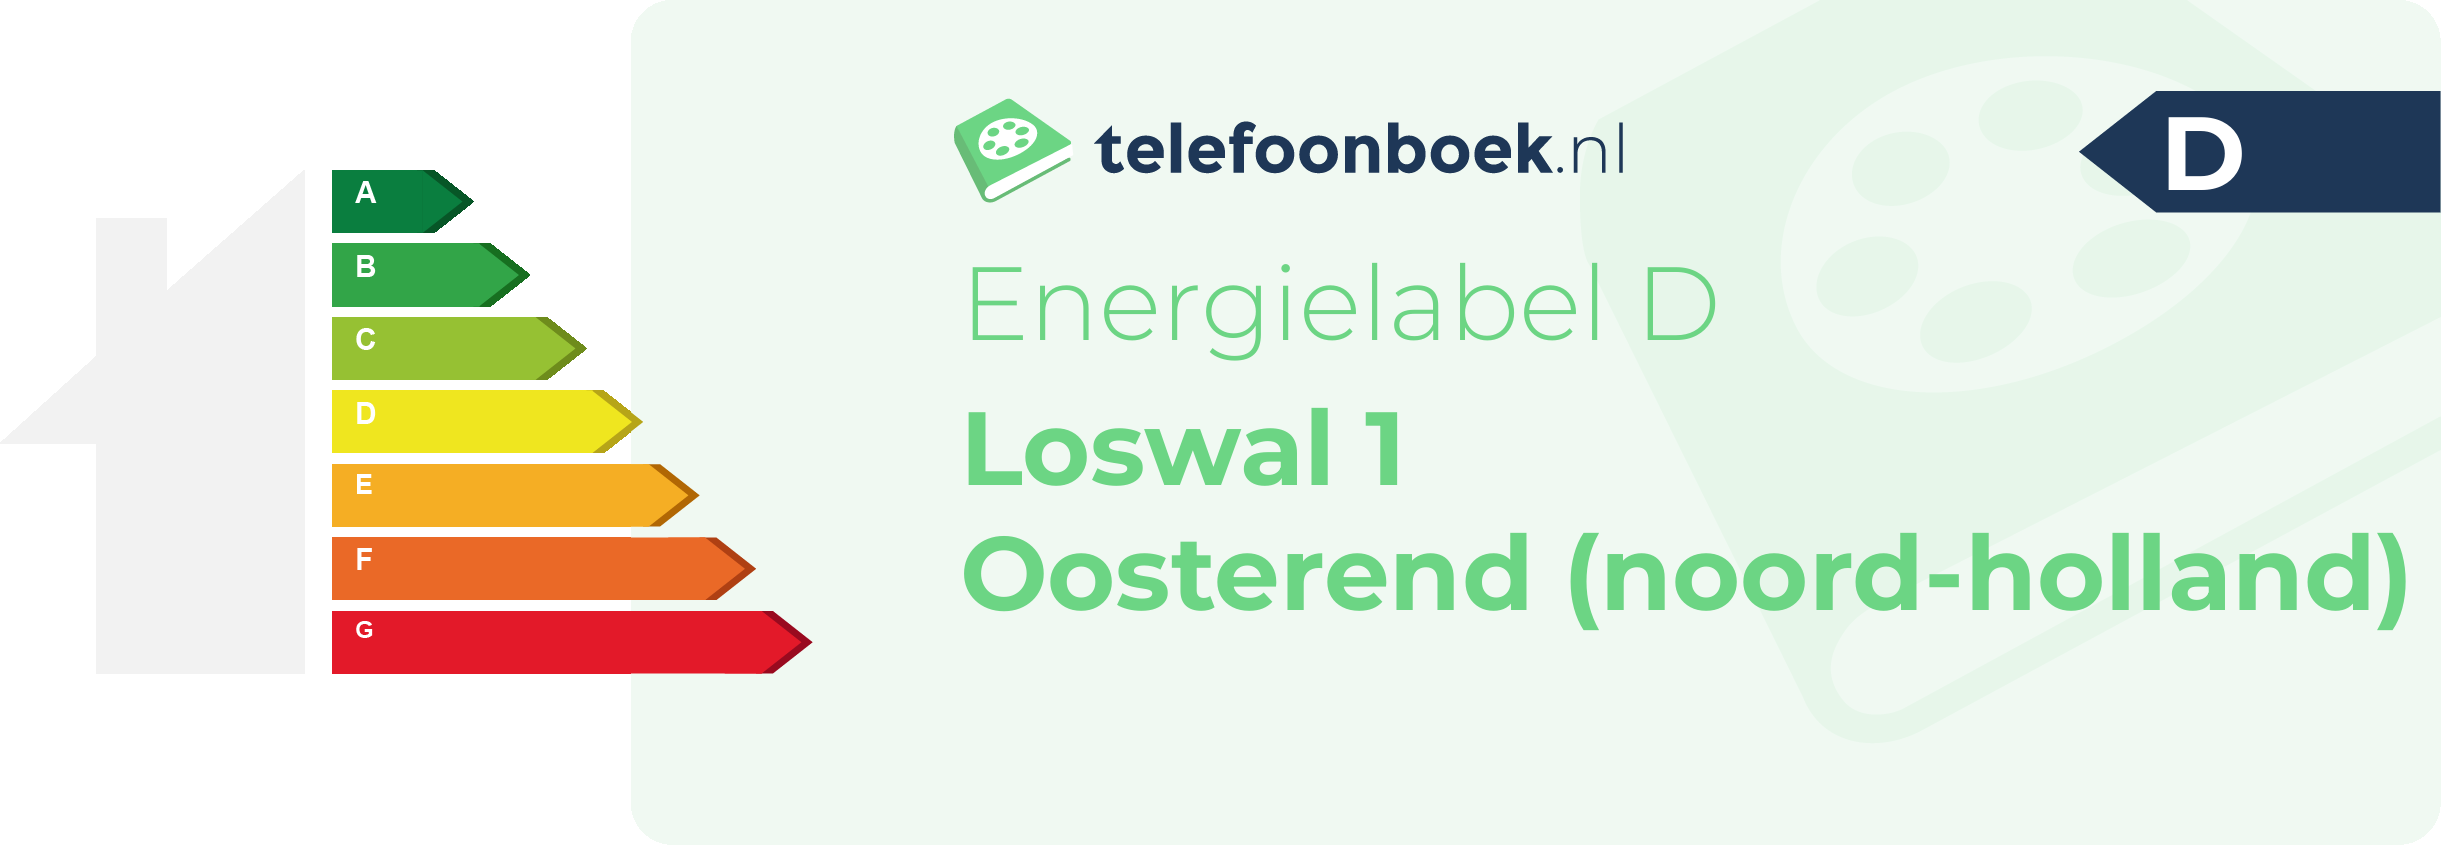 Energielabel Loswal 1 Oosterend (Noord-Holland)